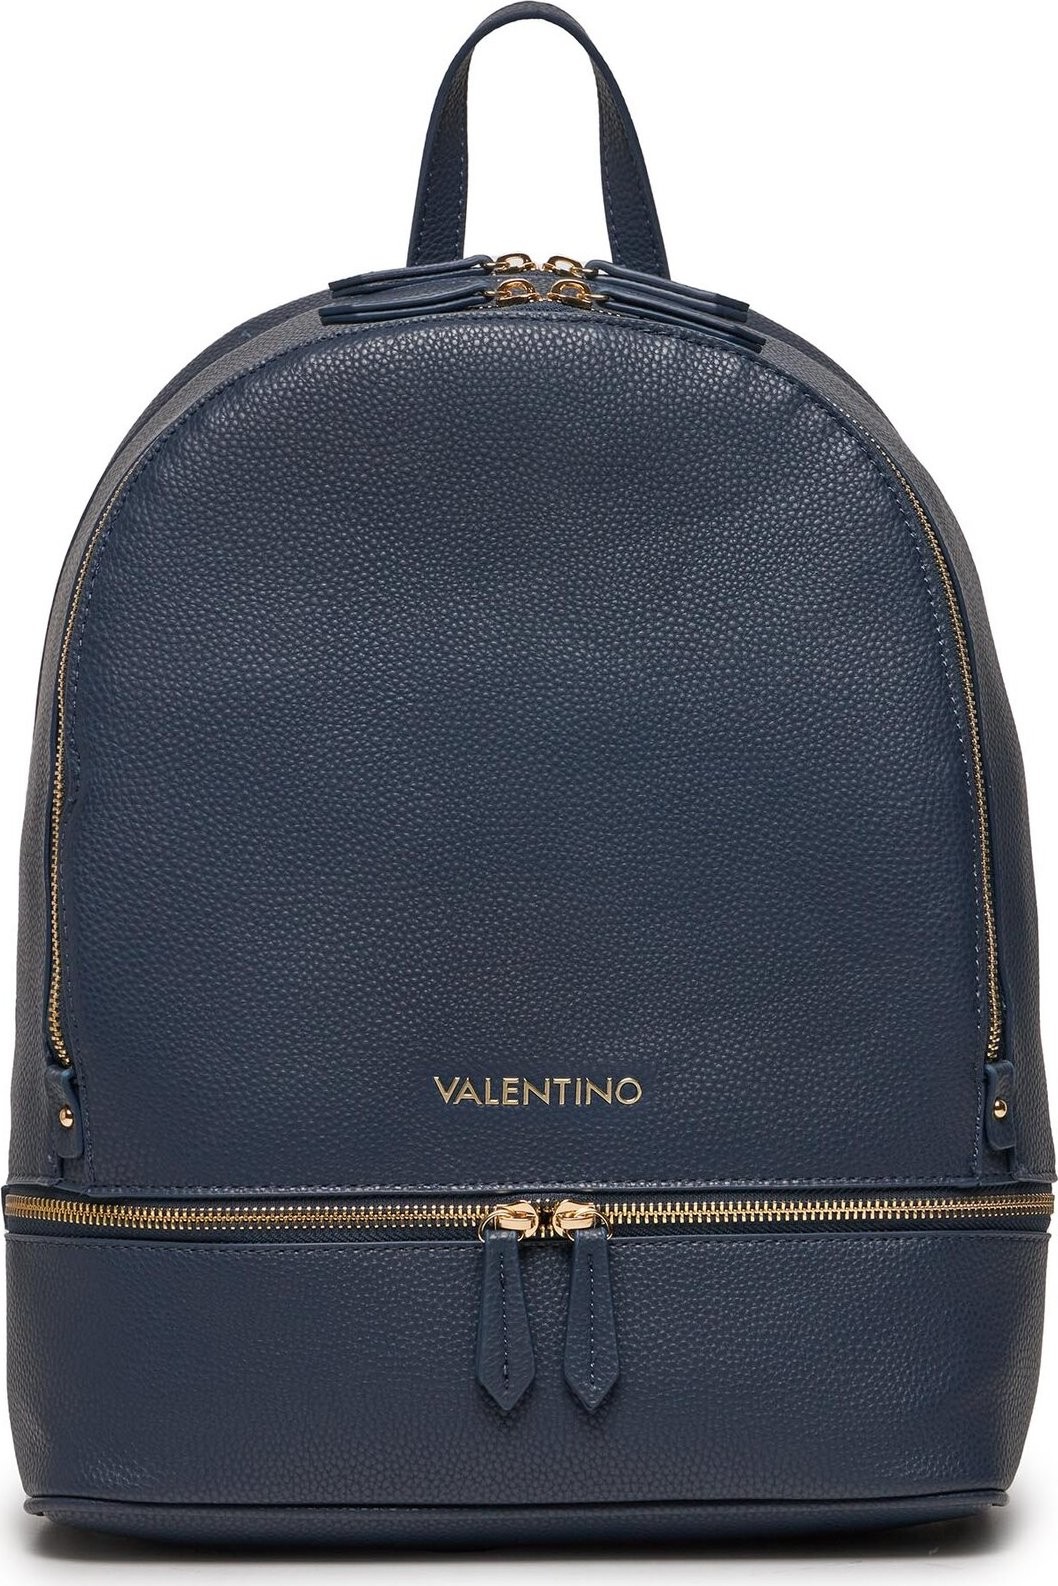 Batoh Valentino Brixton VBS7LX02 Blu 002